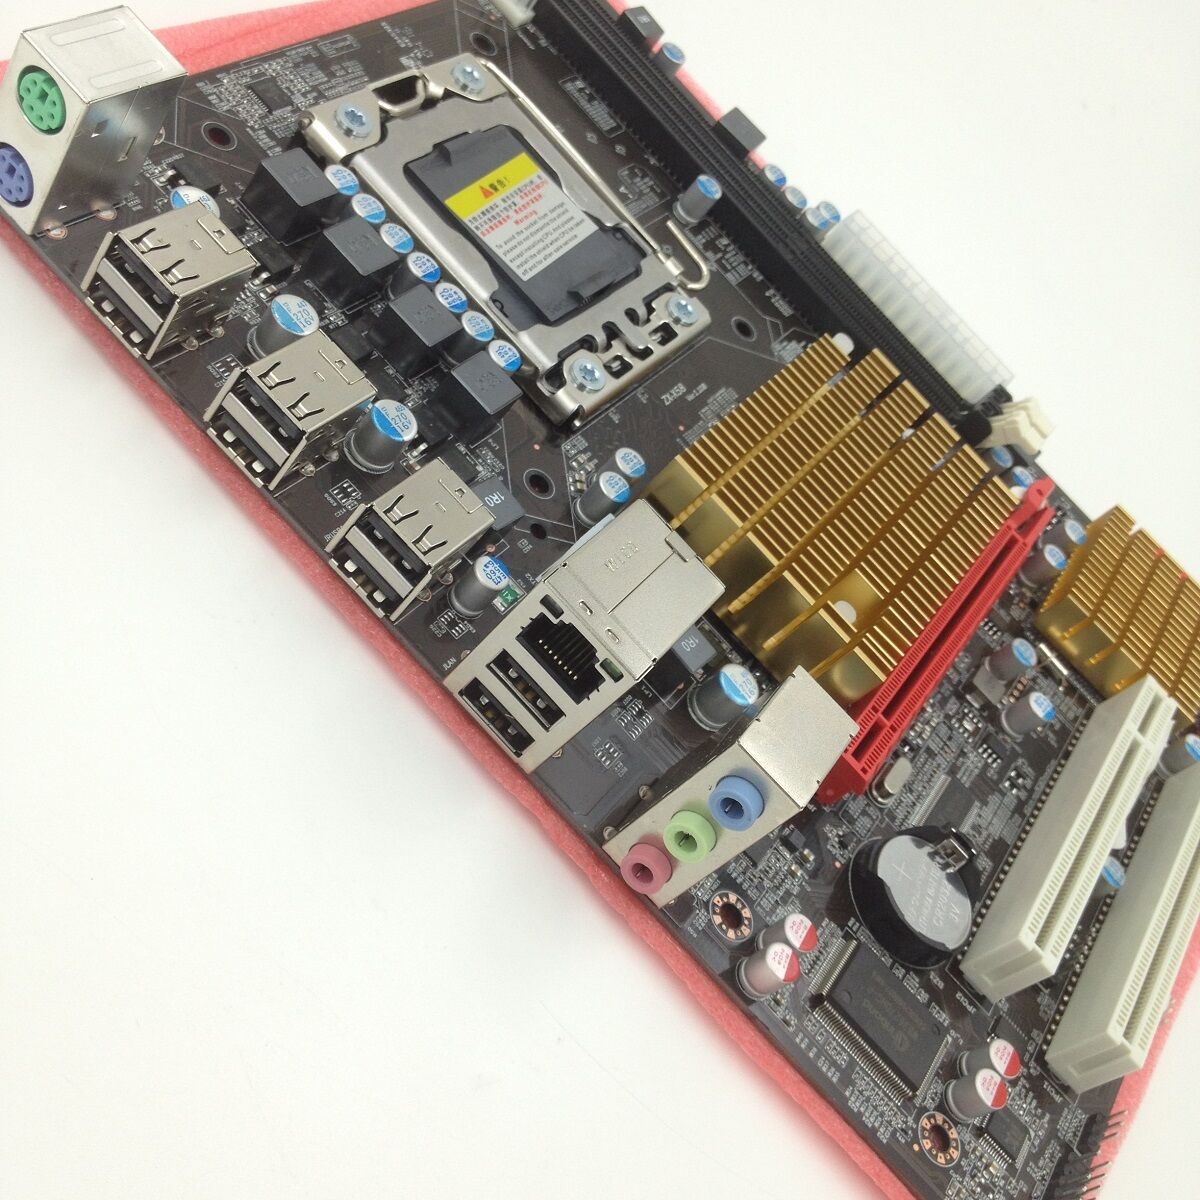 Intel X58 ATX LGA 1366 Computer Motherboard Support LGA 1366/Socket B NEW